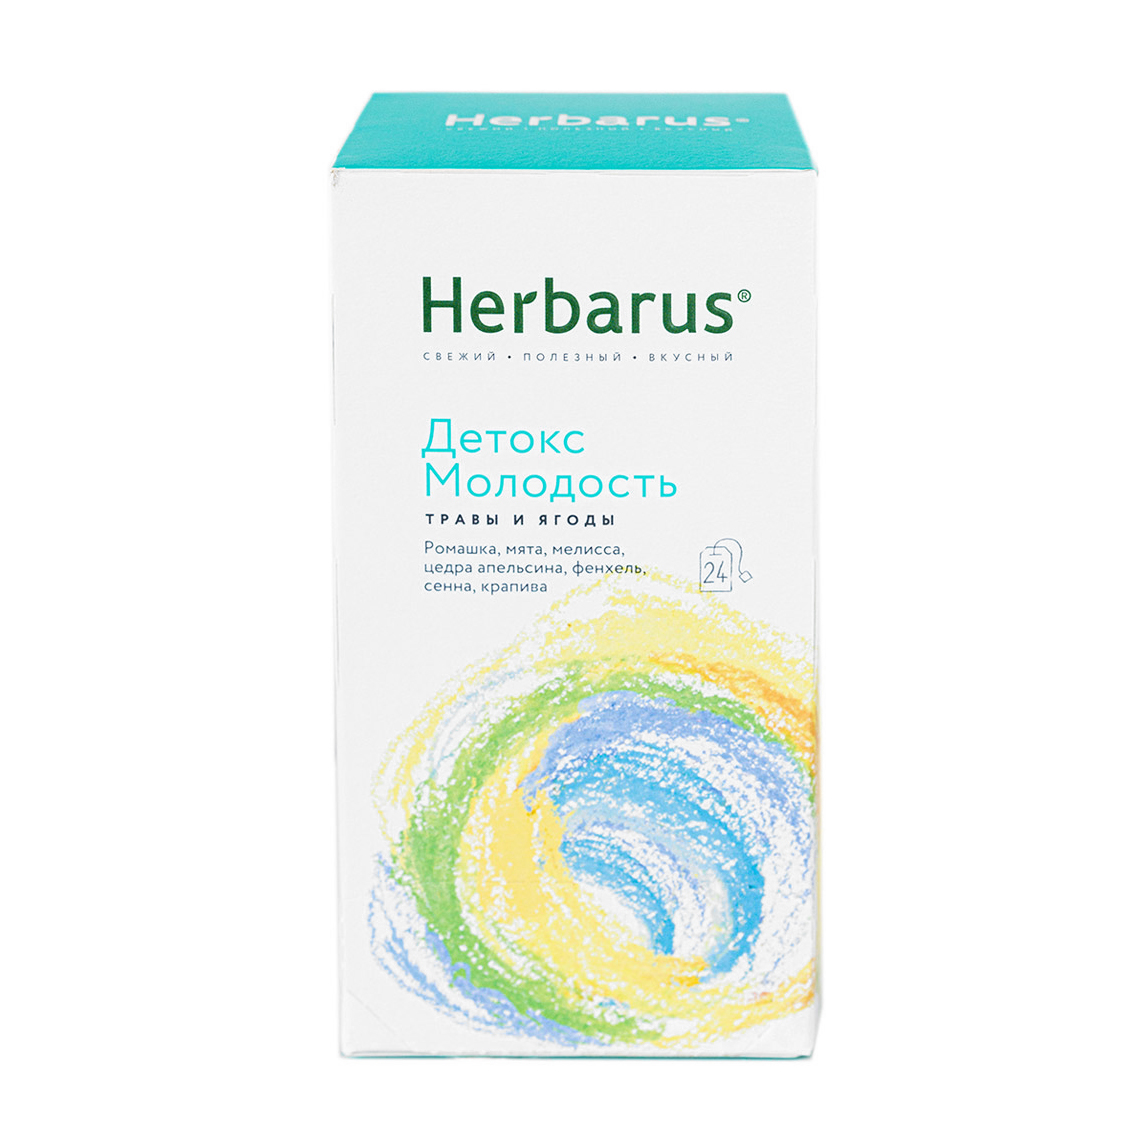 Чайный напиток Herbarus Детокс молодость 24 пакетика herbarus чайный напиток имбирная энергия 24 х 1 8 г herbarus травы и ягоды